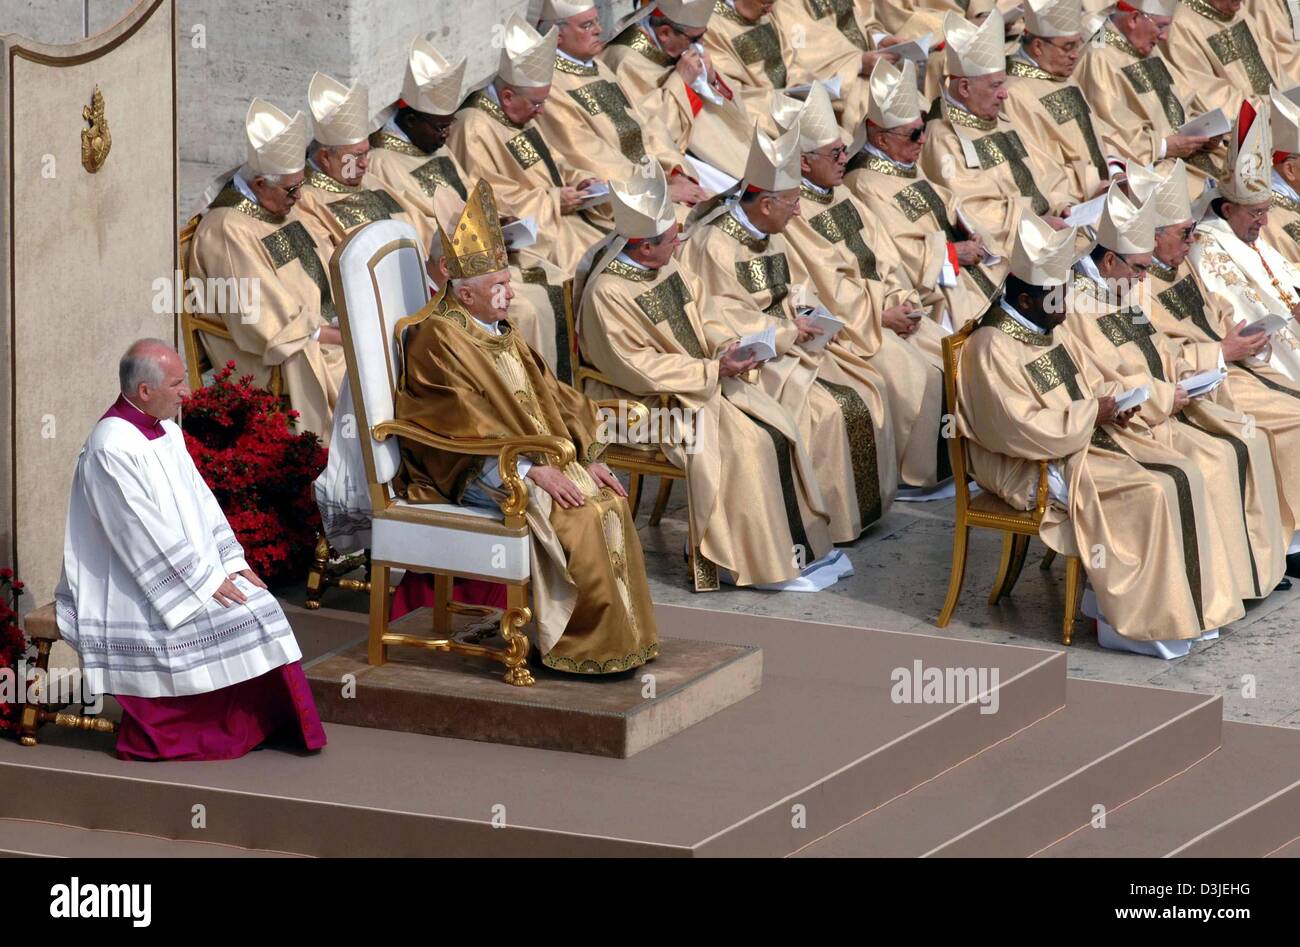 Ciencias Sociales Tropezón Desenmarañar Dpa) - El Papa Benedicto XVI (segunda de L, delantero), vestida con el  manto papal con tiara, se sienta en una silla junto a los cardenales  durante la misa en la Plaza